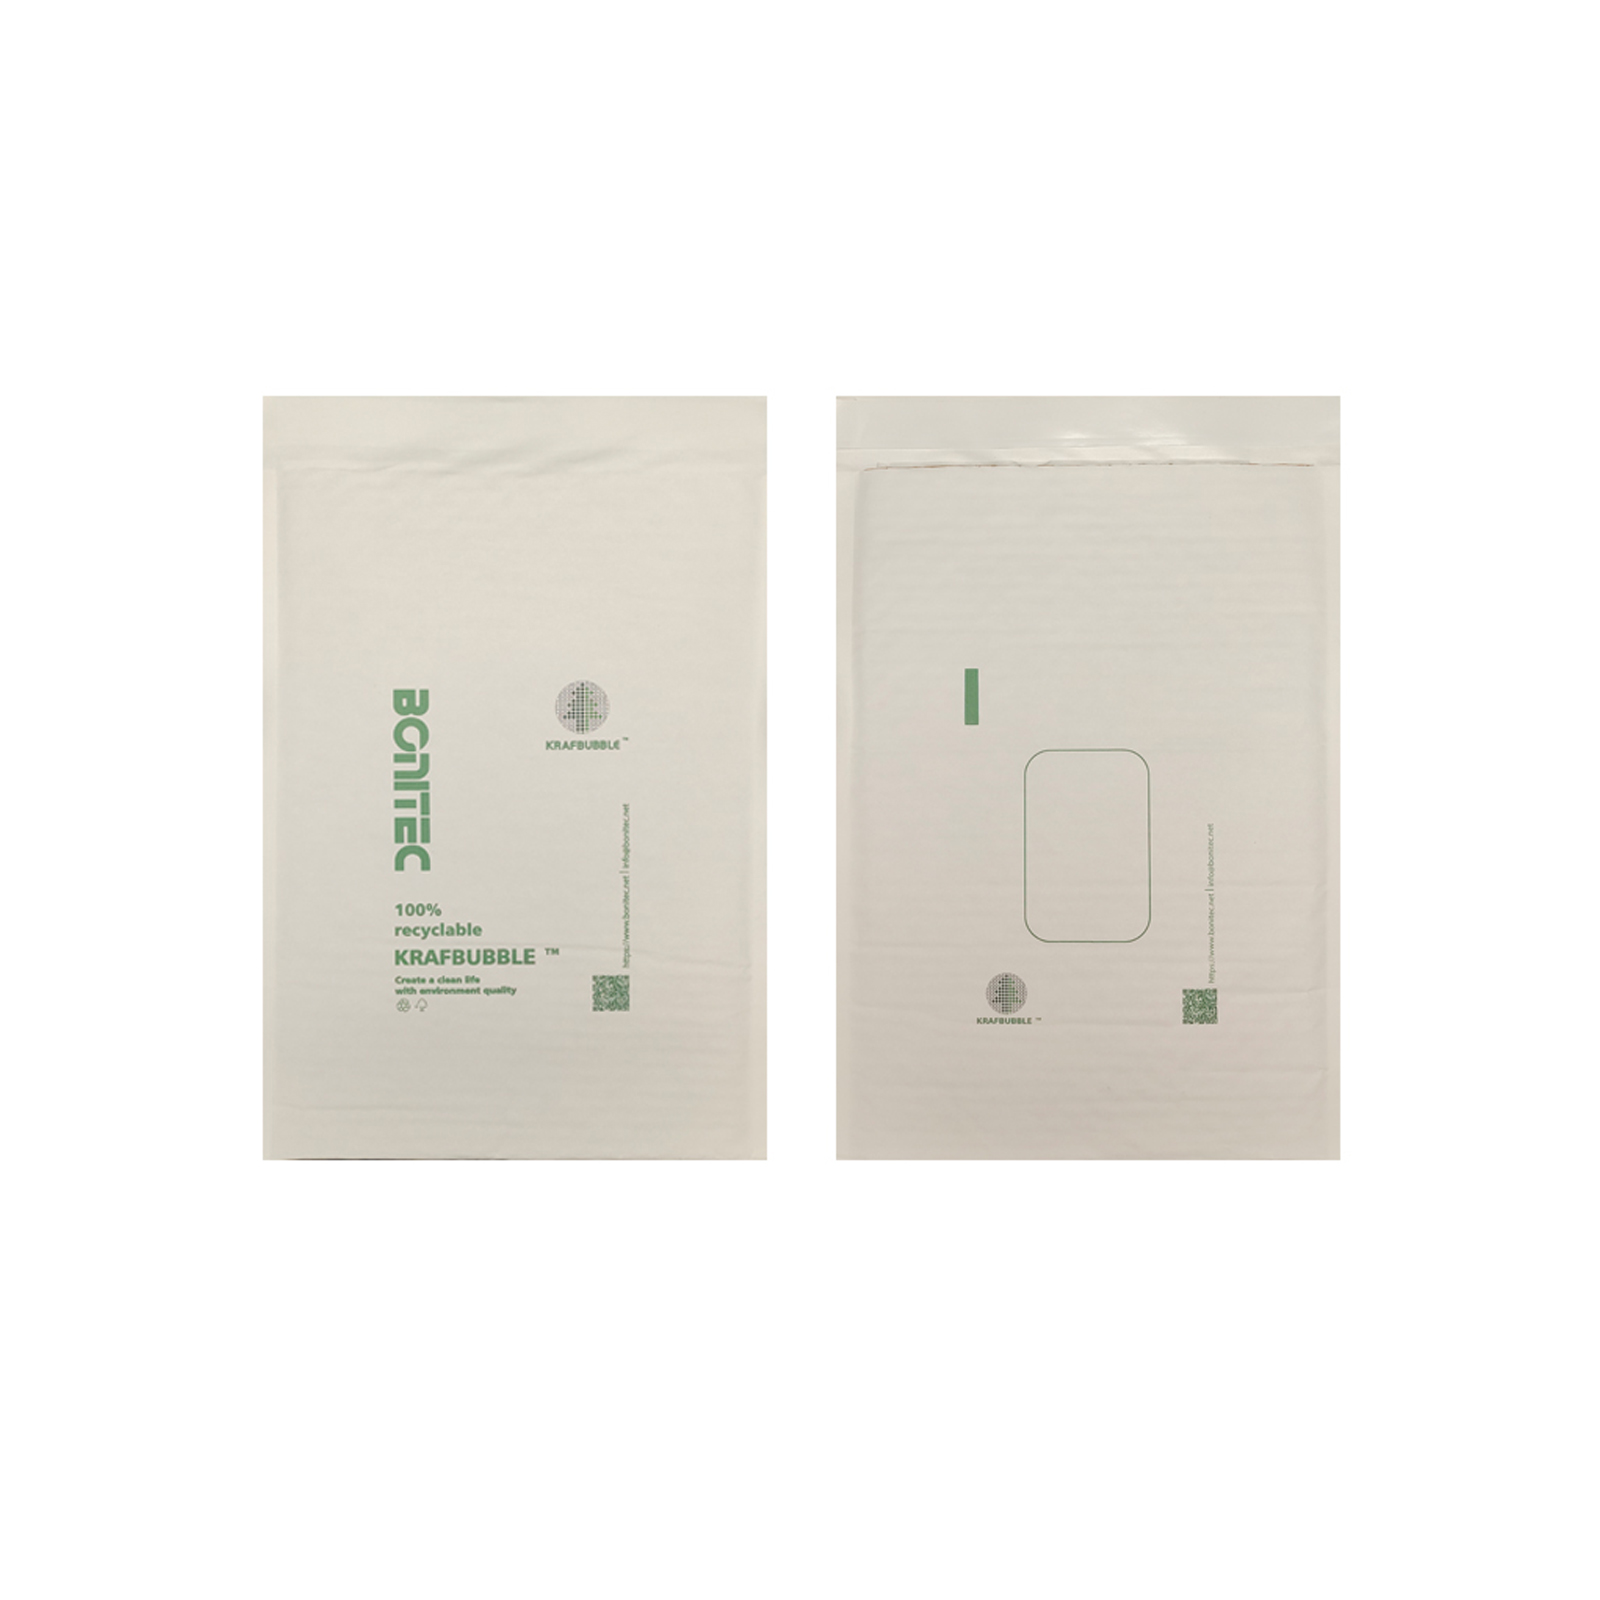 Anuncio publicitario KRAFBUBBLE blanco-mediano de 3 capas, 200 piezas (235 mm × 345 mm / 9.25 '' × 13.58 '')